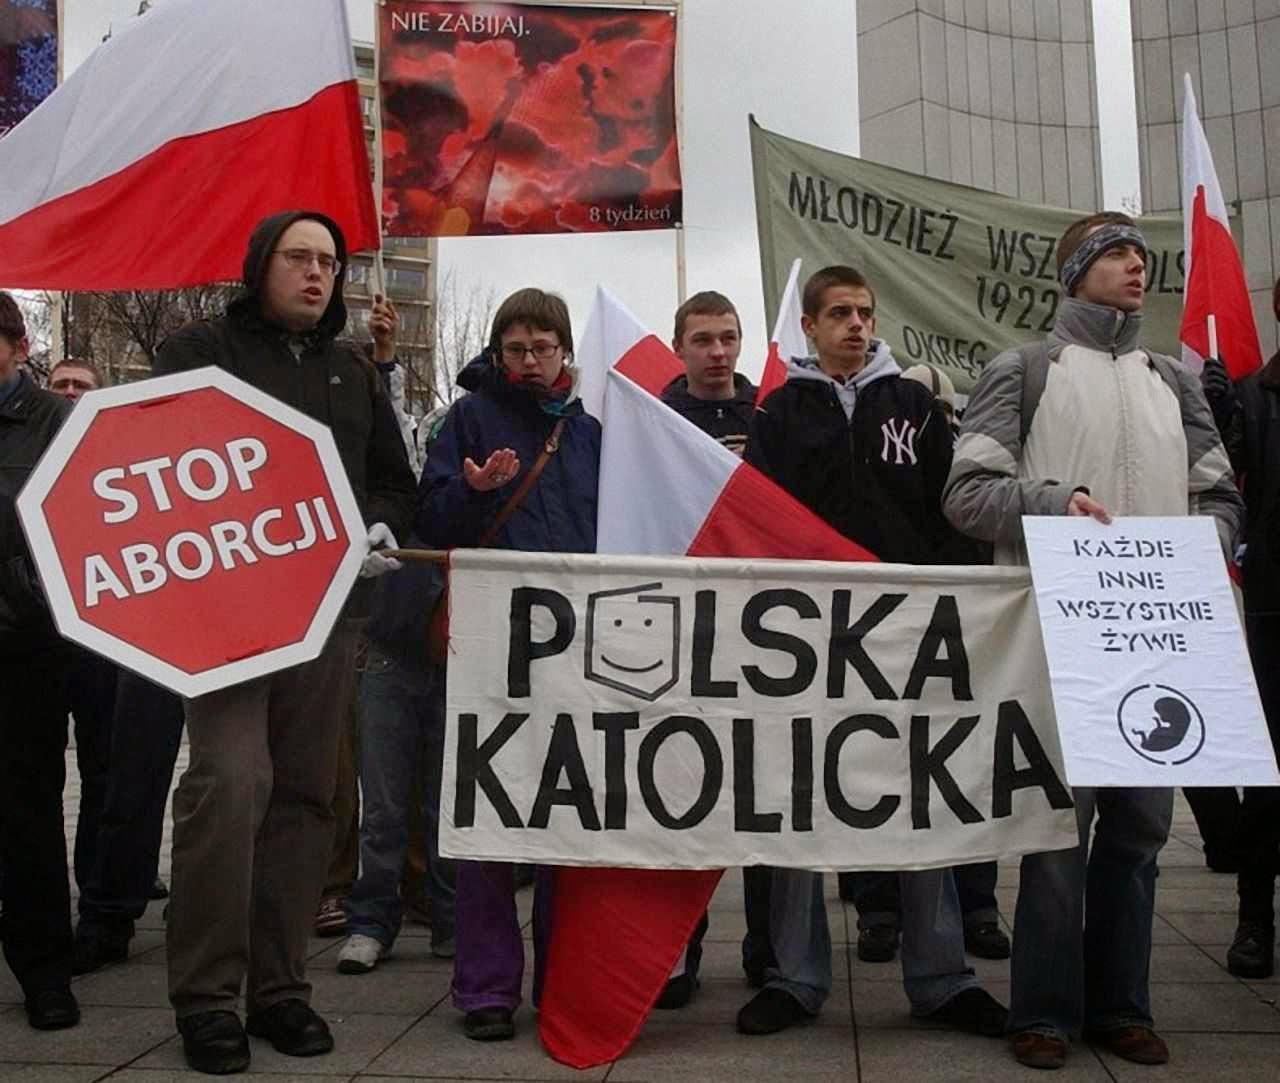 Jovens contra o aborto na Polônia